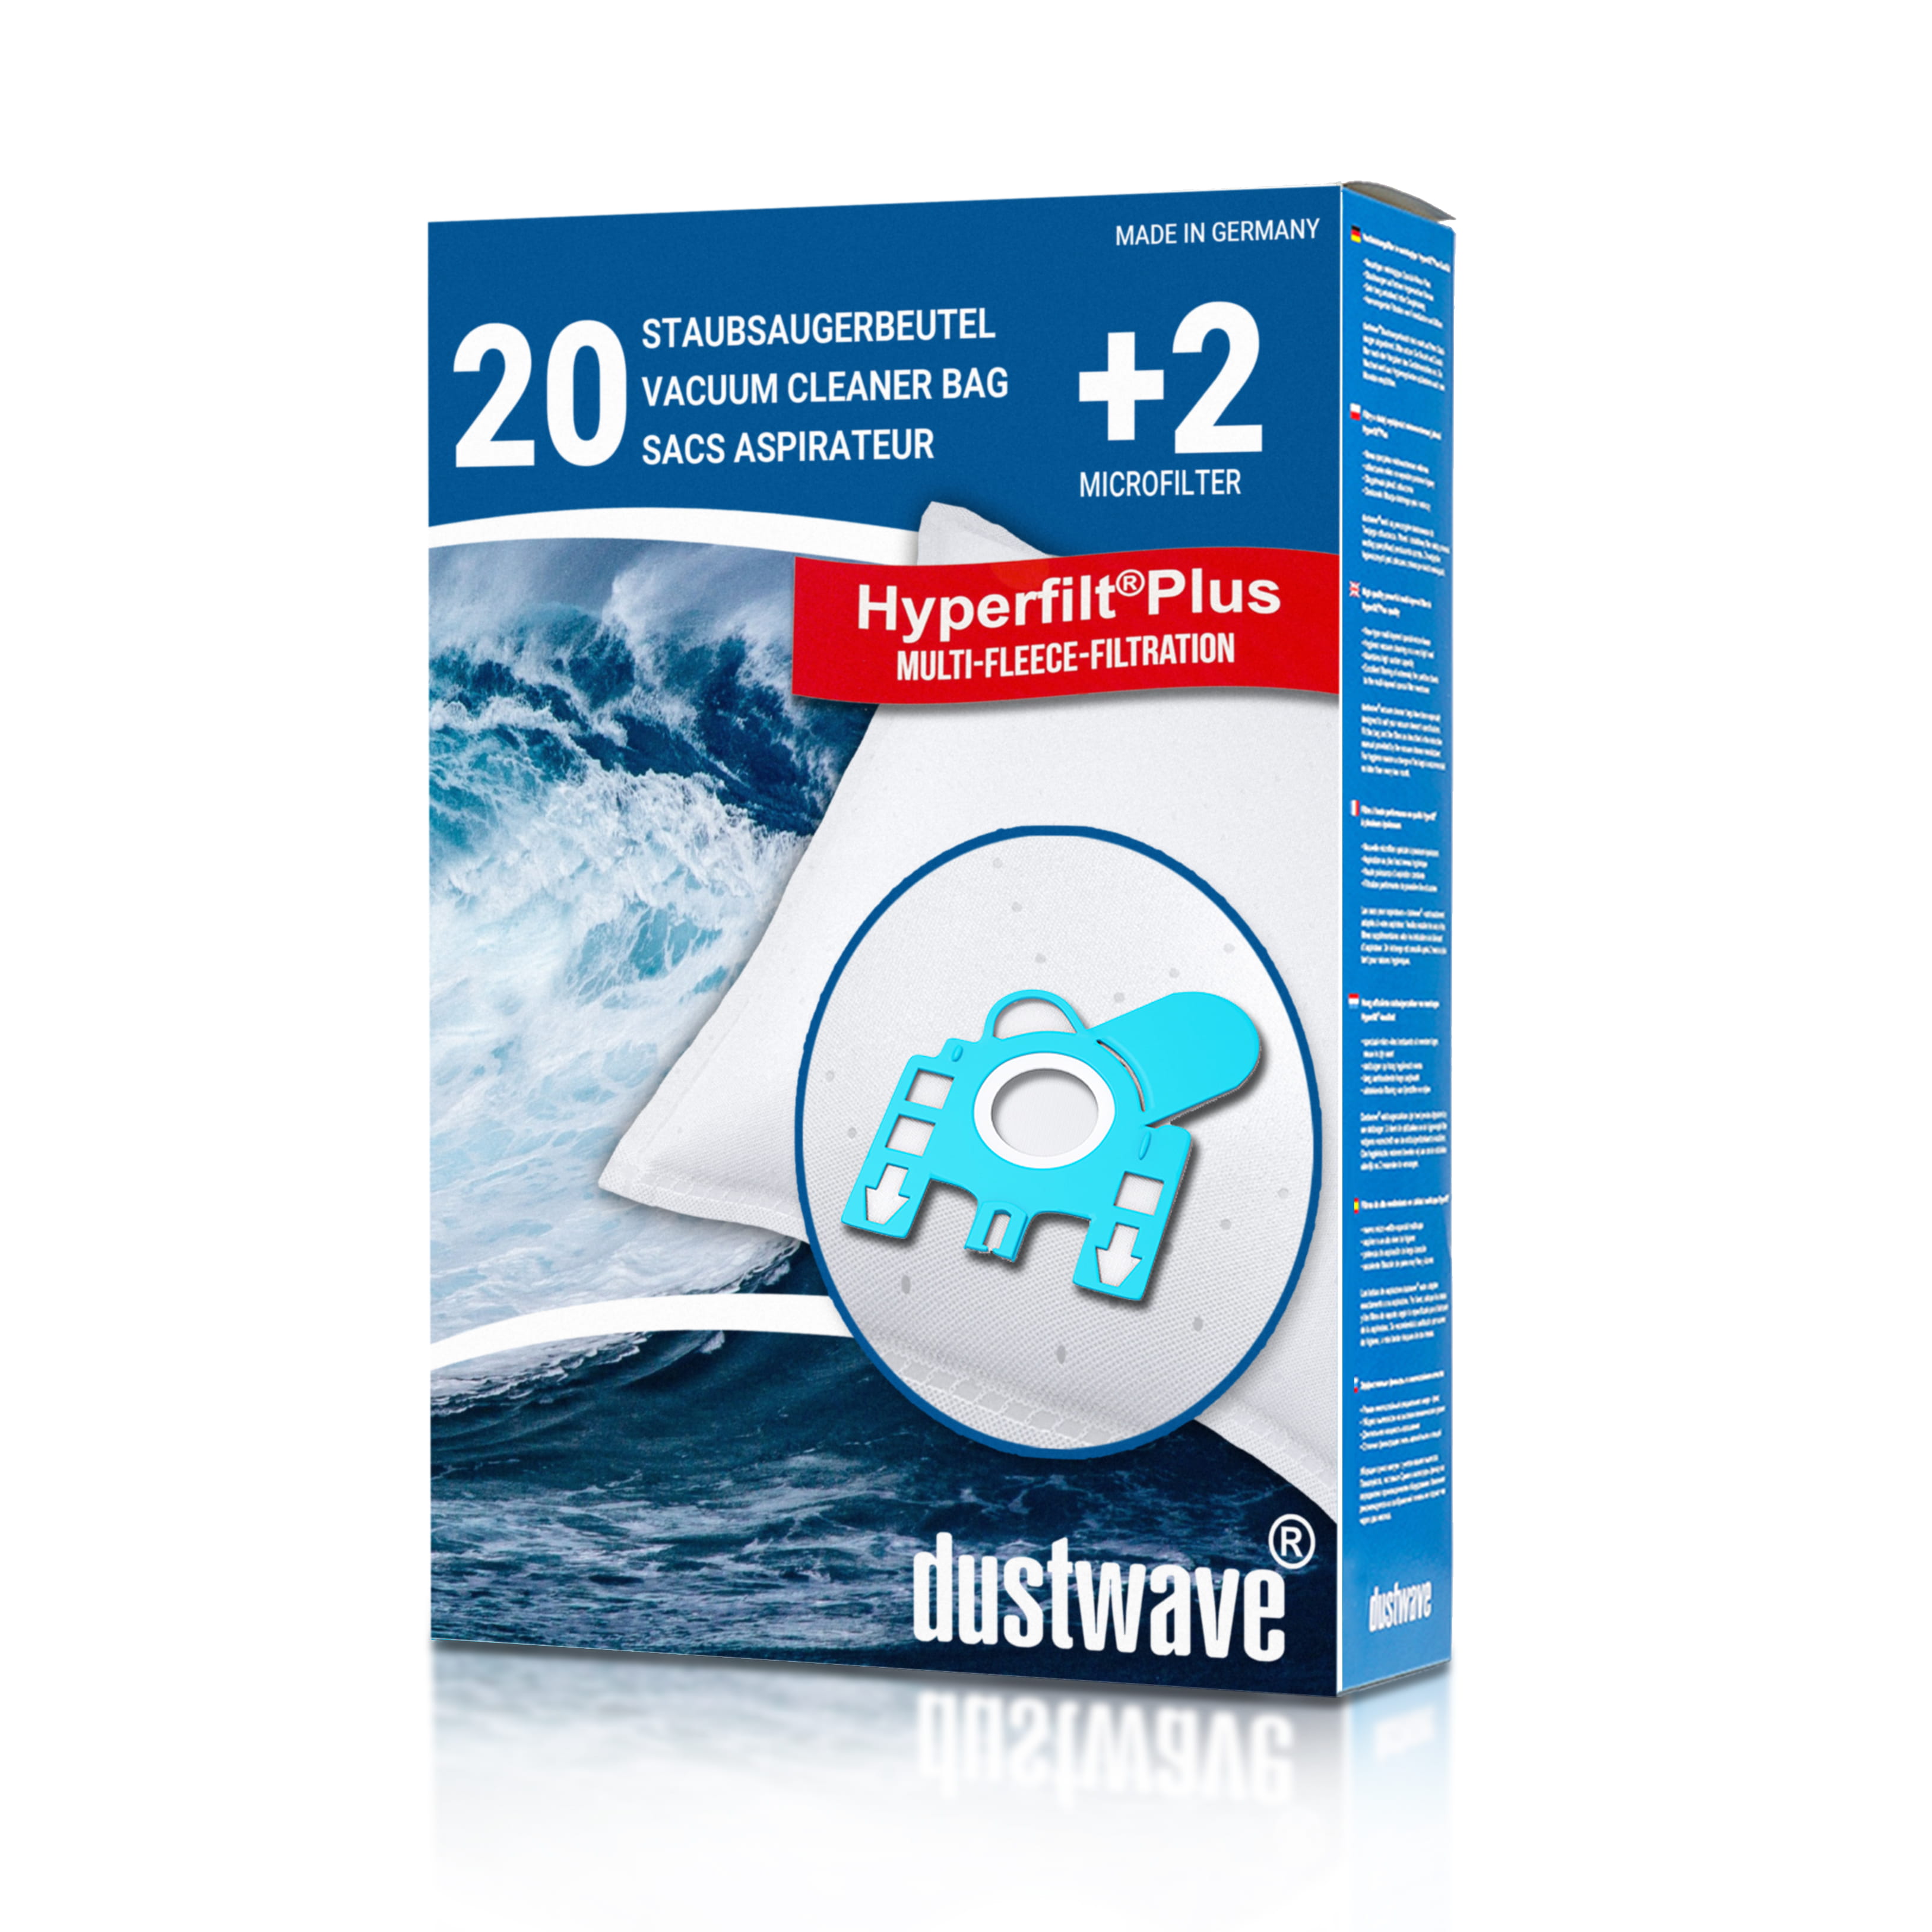 Dustwave® 20 Staubsaugerbeutel für Hoover TS2201 / TRTS2201 - hocheffizient, mehrlagiges Mikrovlies mit Hygieneverschluss - Made in Germany